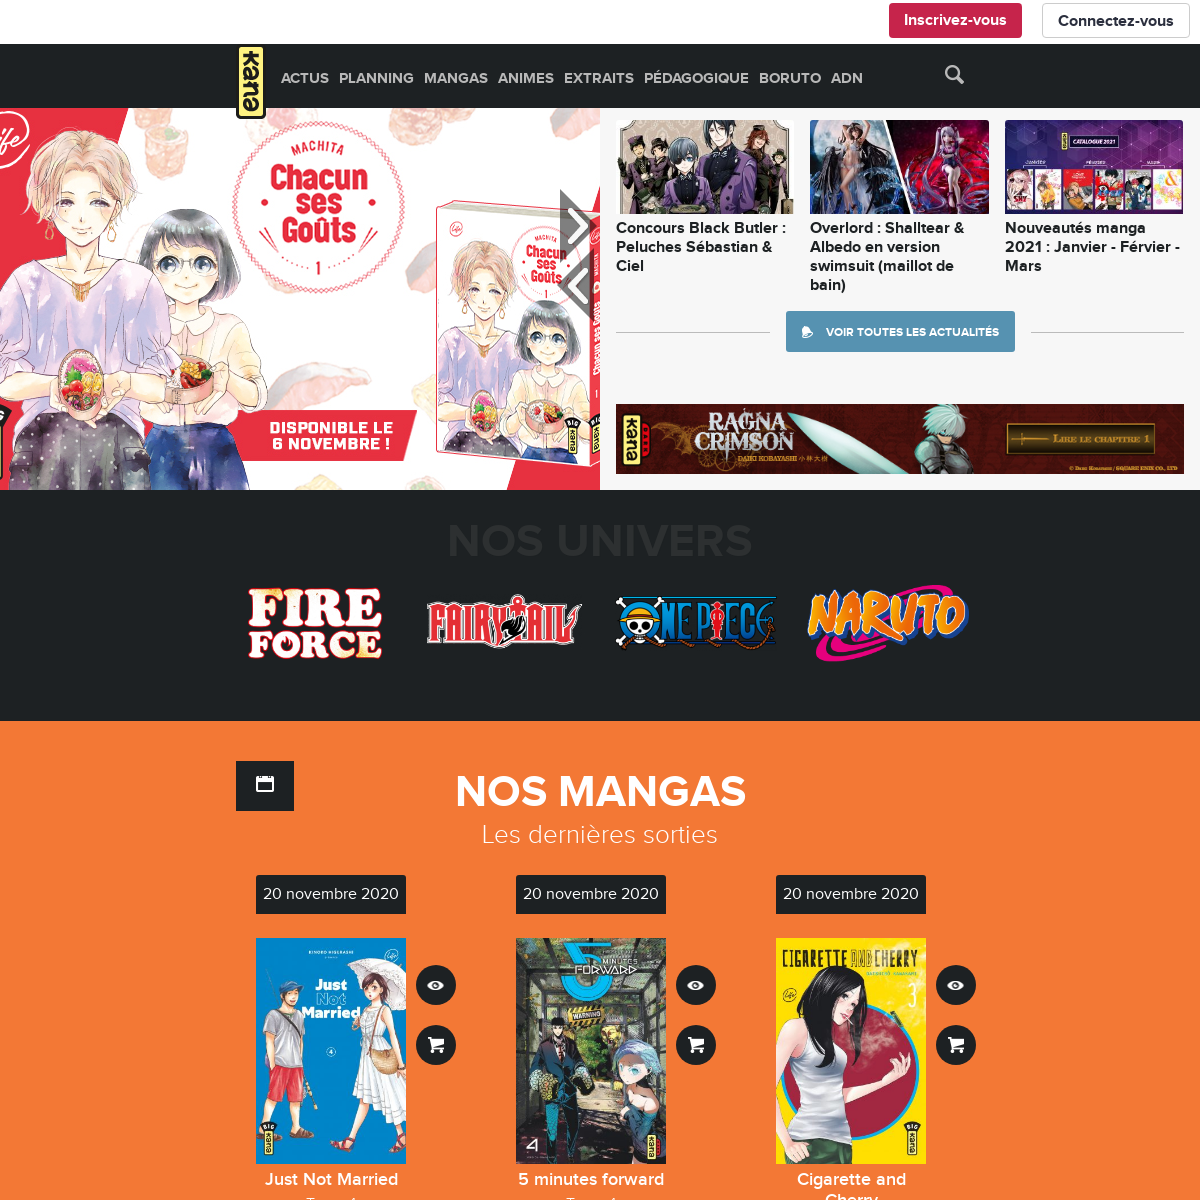 A complete backup of mangakana.com